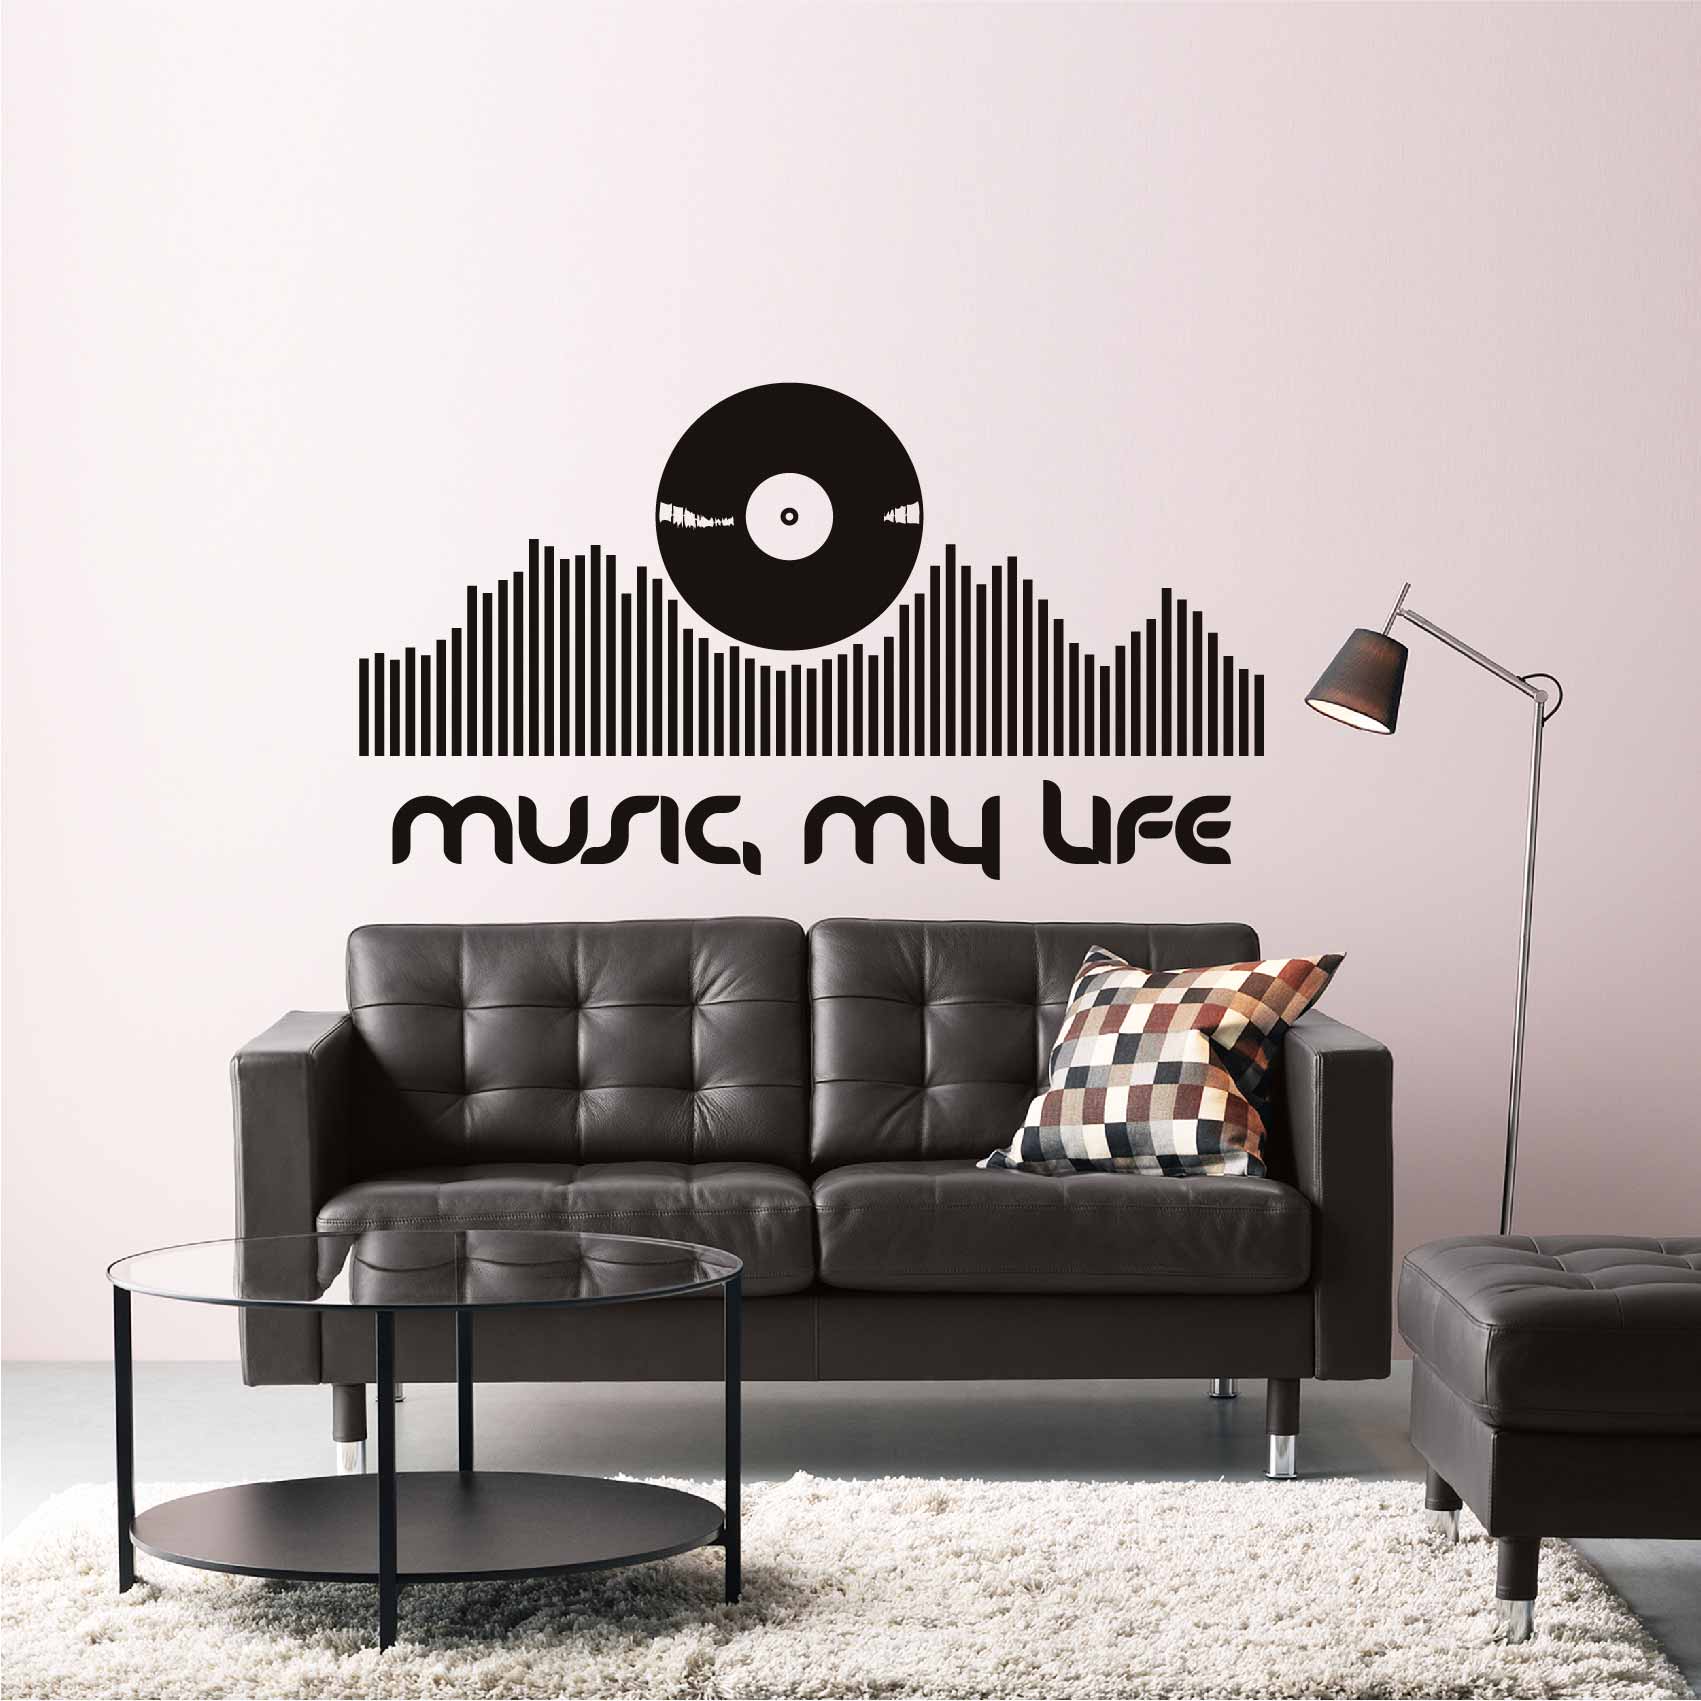 stickers-muraux-musique-ref21musique-autocollant-muraux-musique-sticker-mural-musical-note-notes-deco-salon-chambre-adulte-ado-enfant